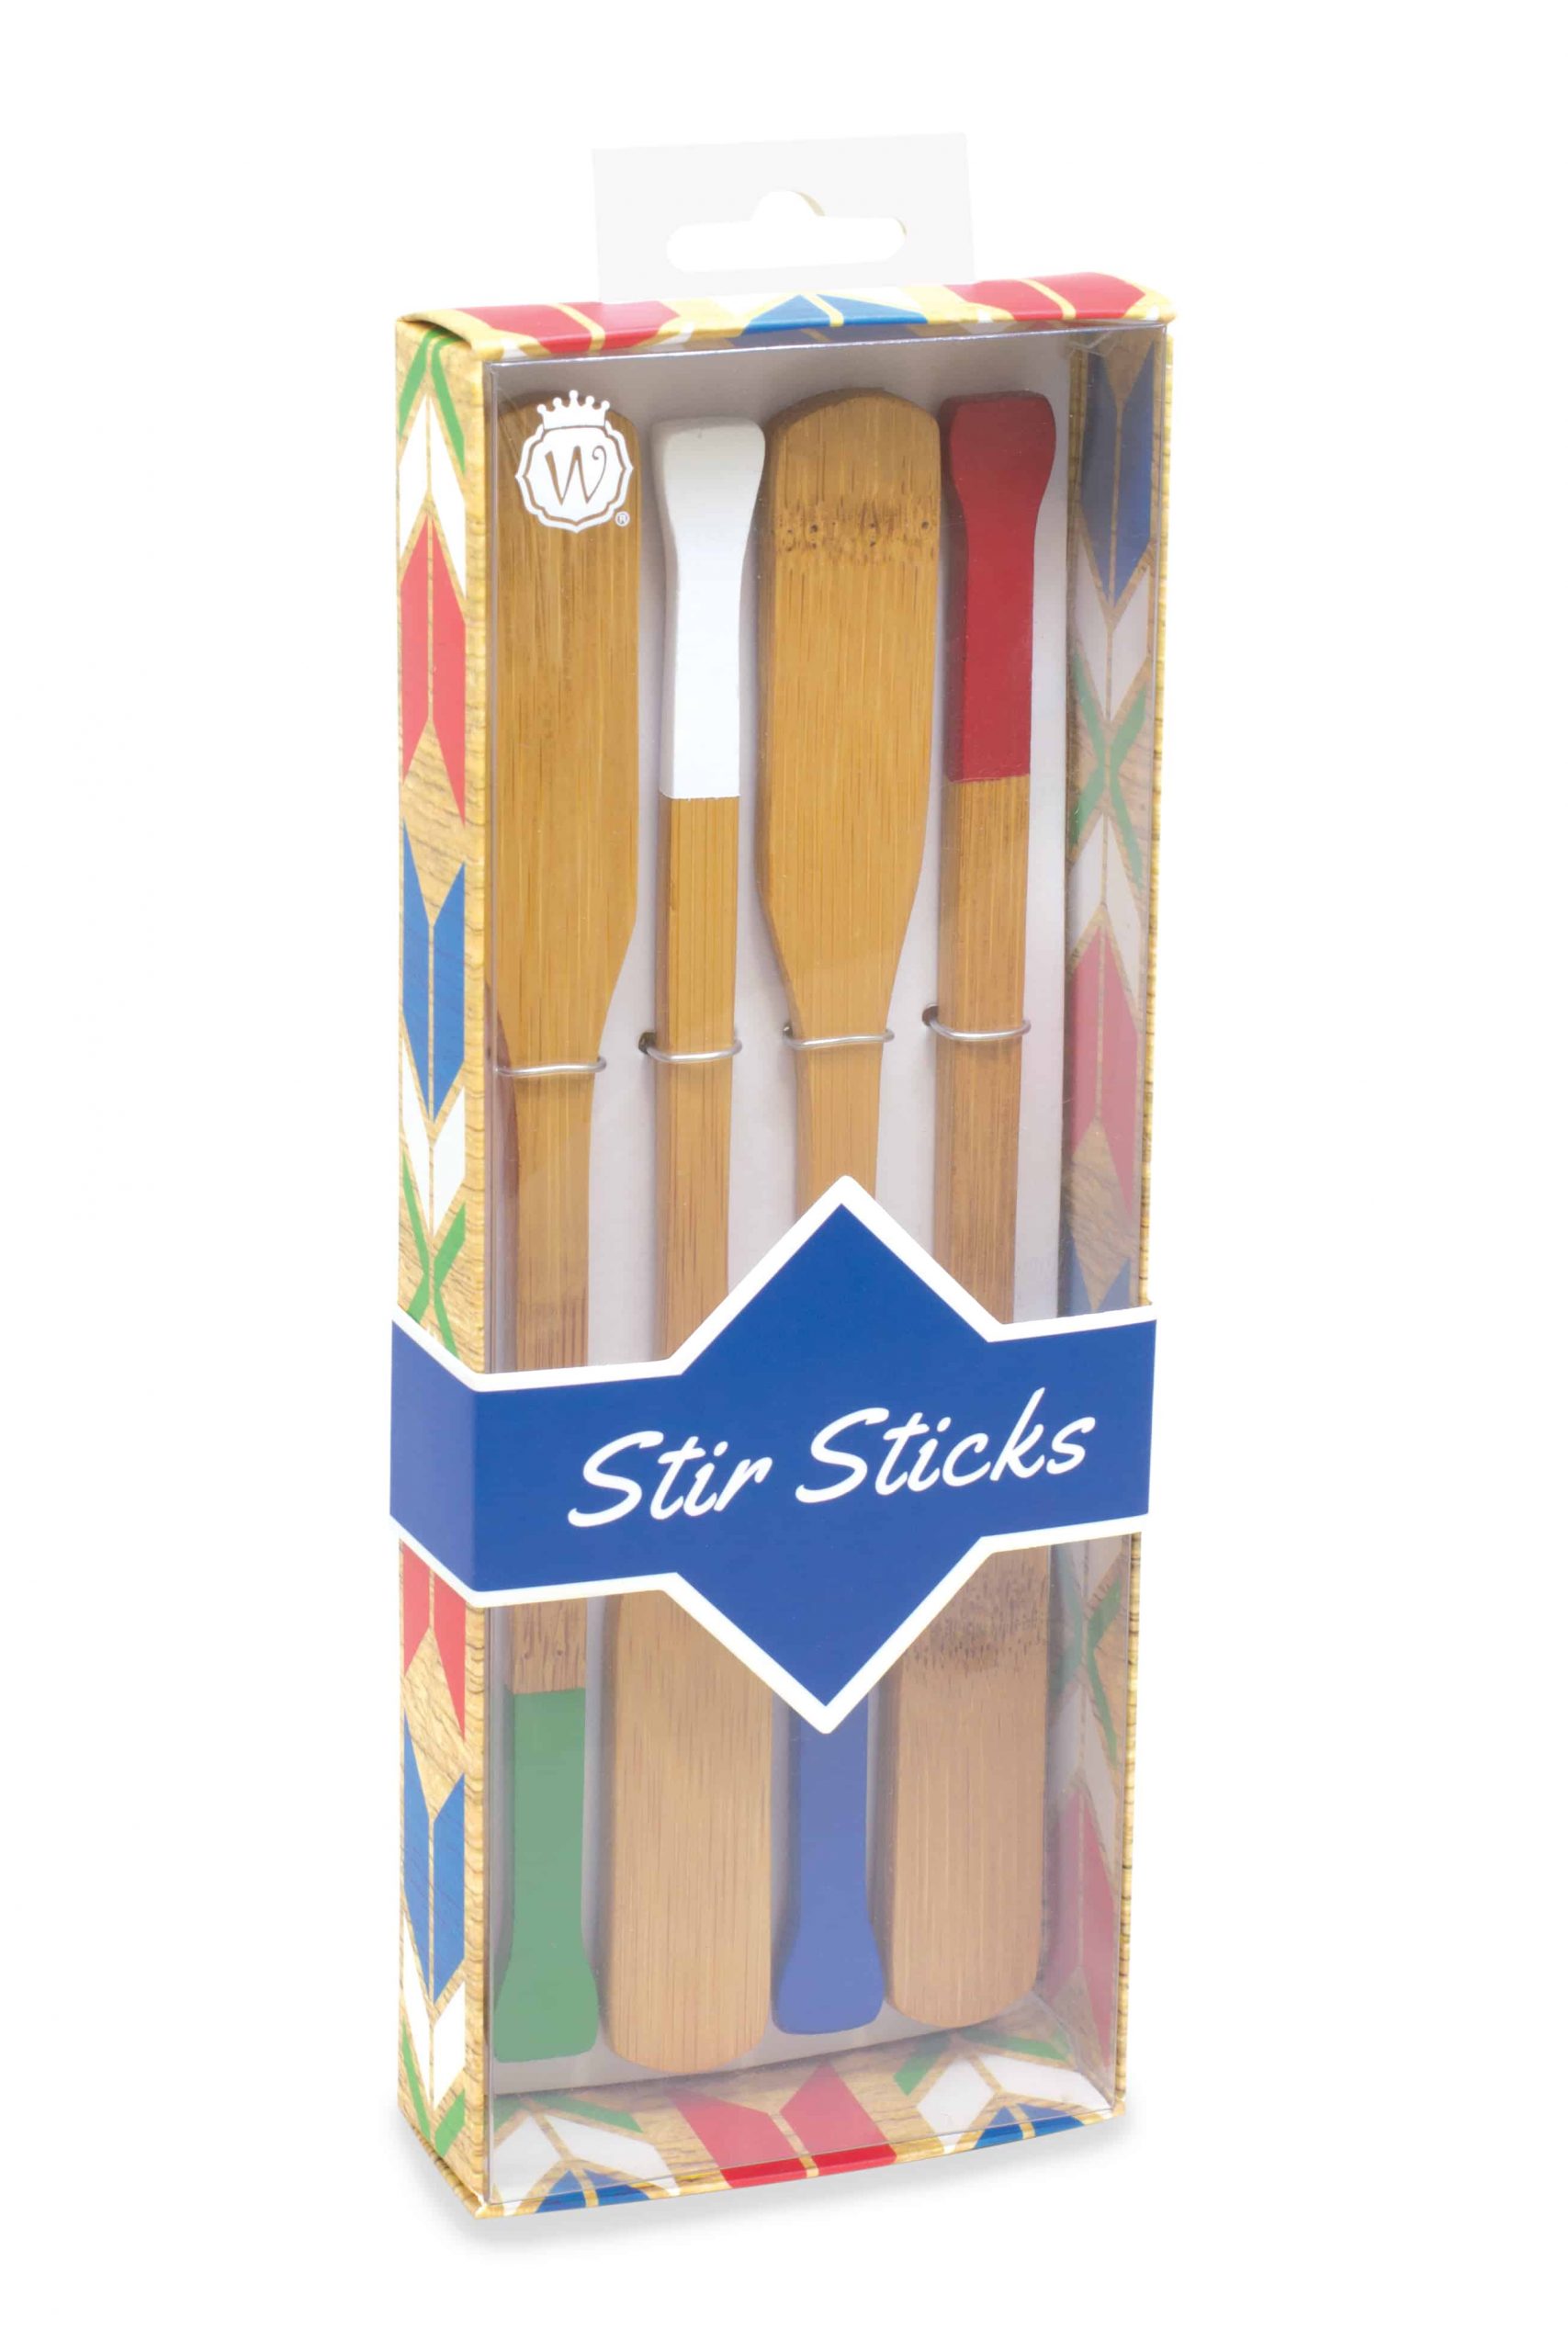 Stir Sticks  Wild Eye Designs